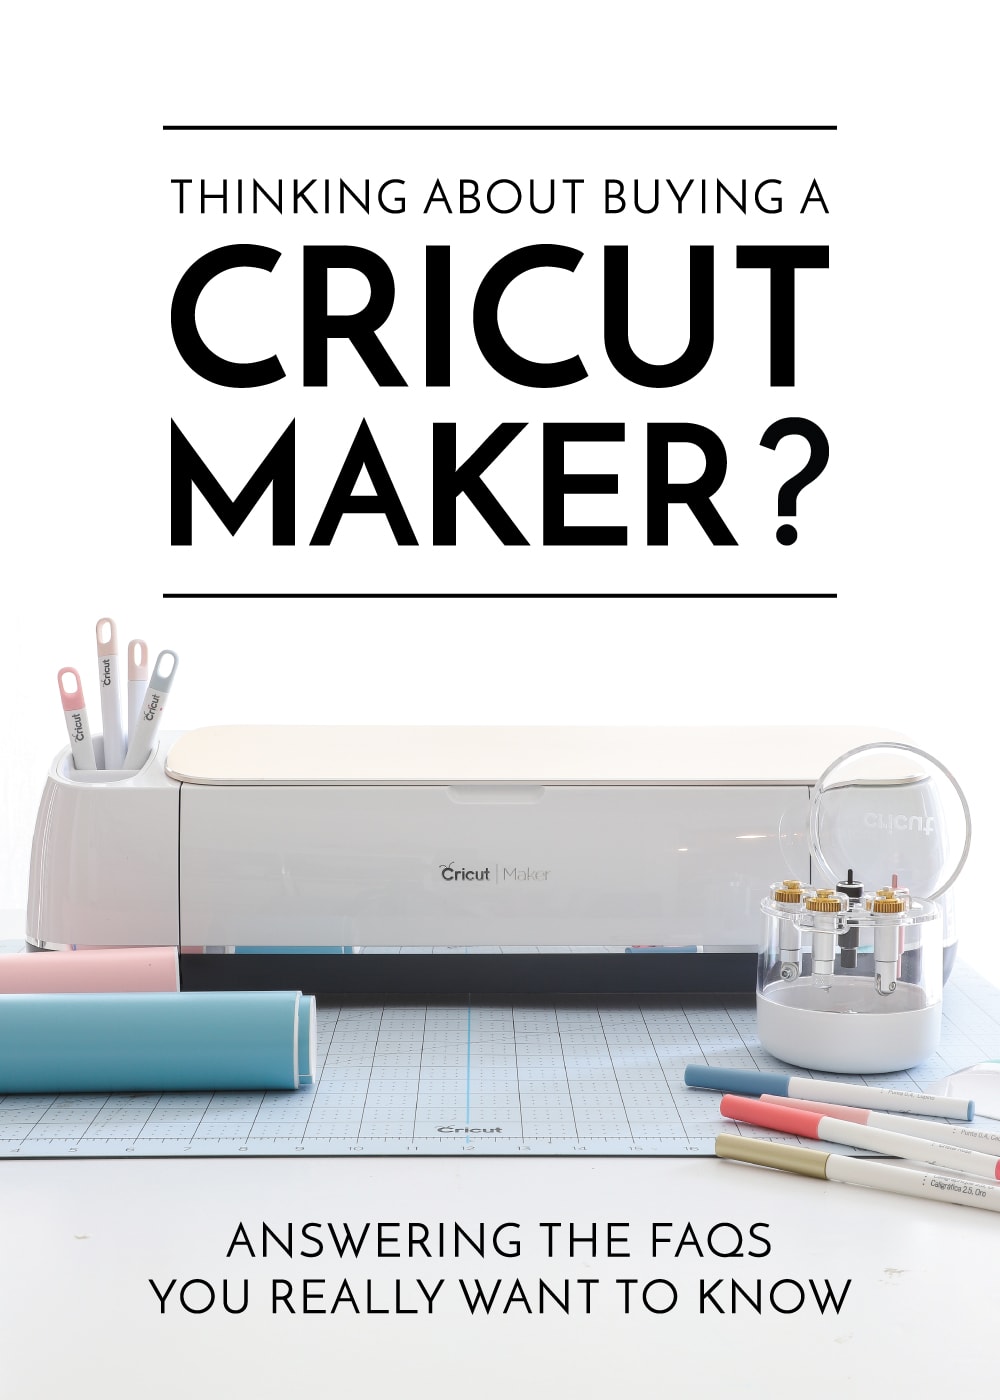 About the Cricut Maker